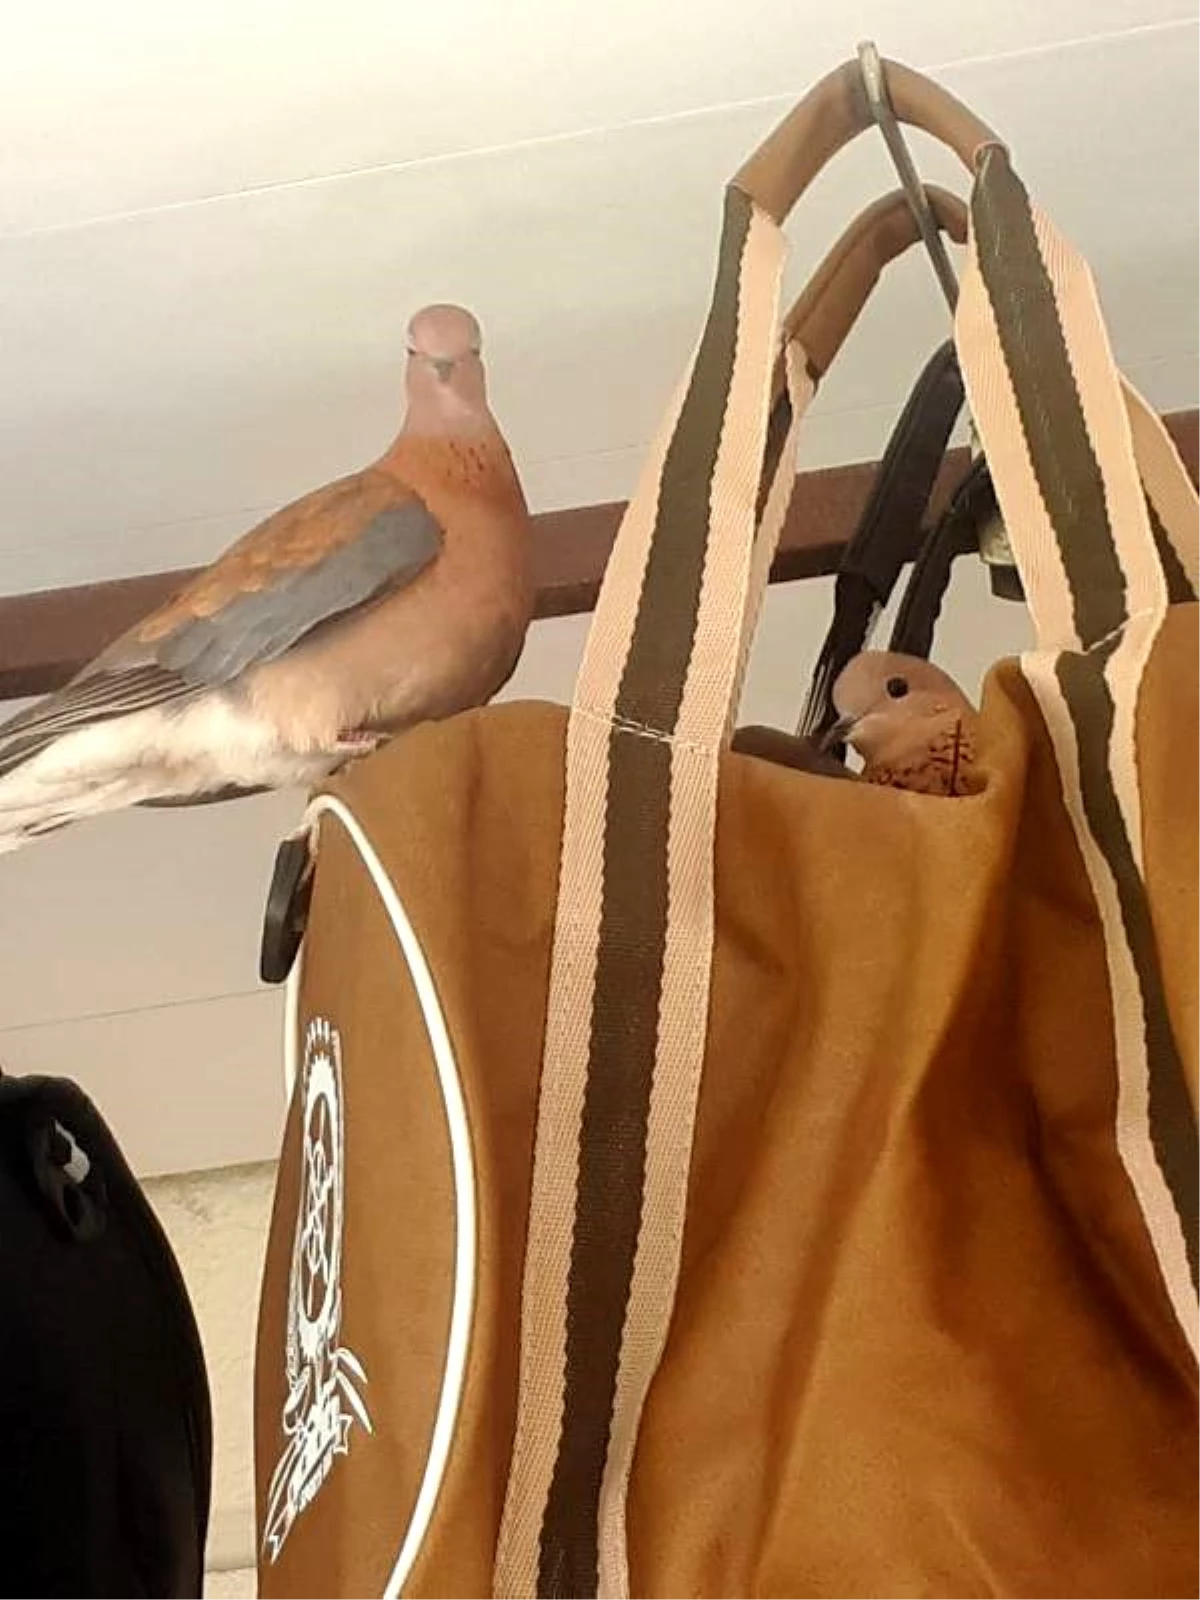 Kuşlar, iş yerinin önündeki çantaya yuva yaptı